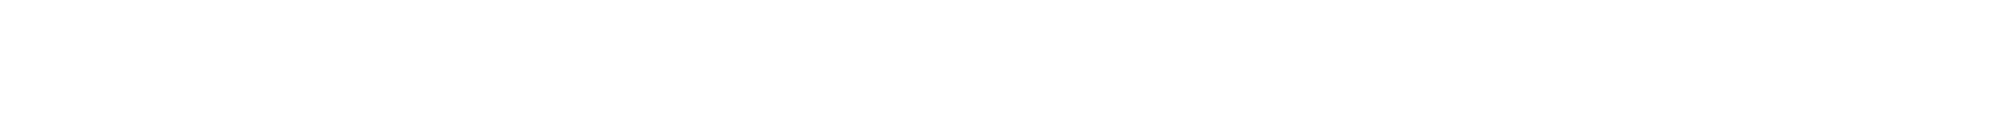 「荻窪」駅から「池袋」駅を経て「東京」駅、「新宿」駅と山手線の内側を「コ」の字形に走行する東京メトロ丸ノ内線。